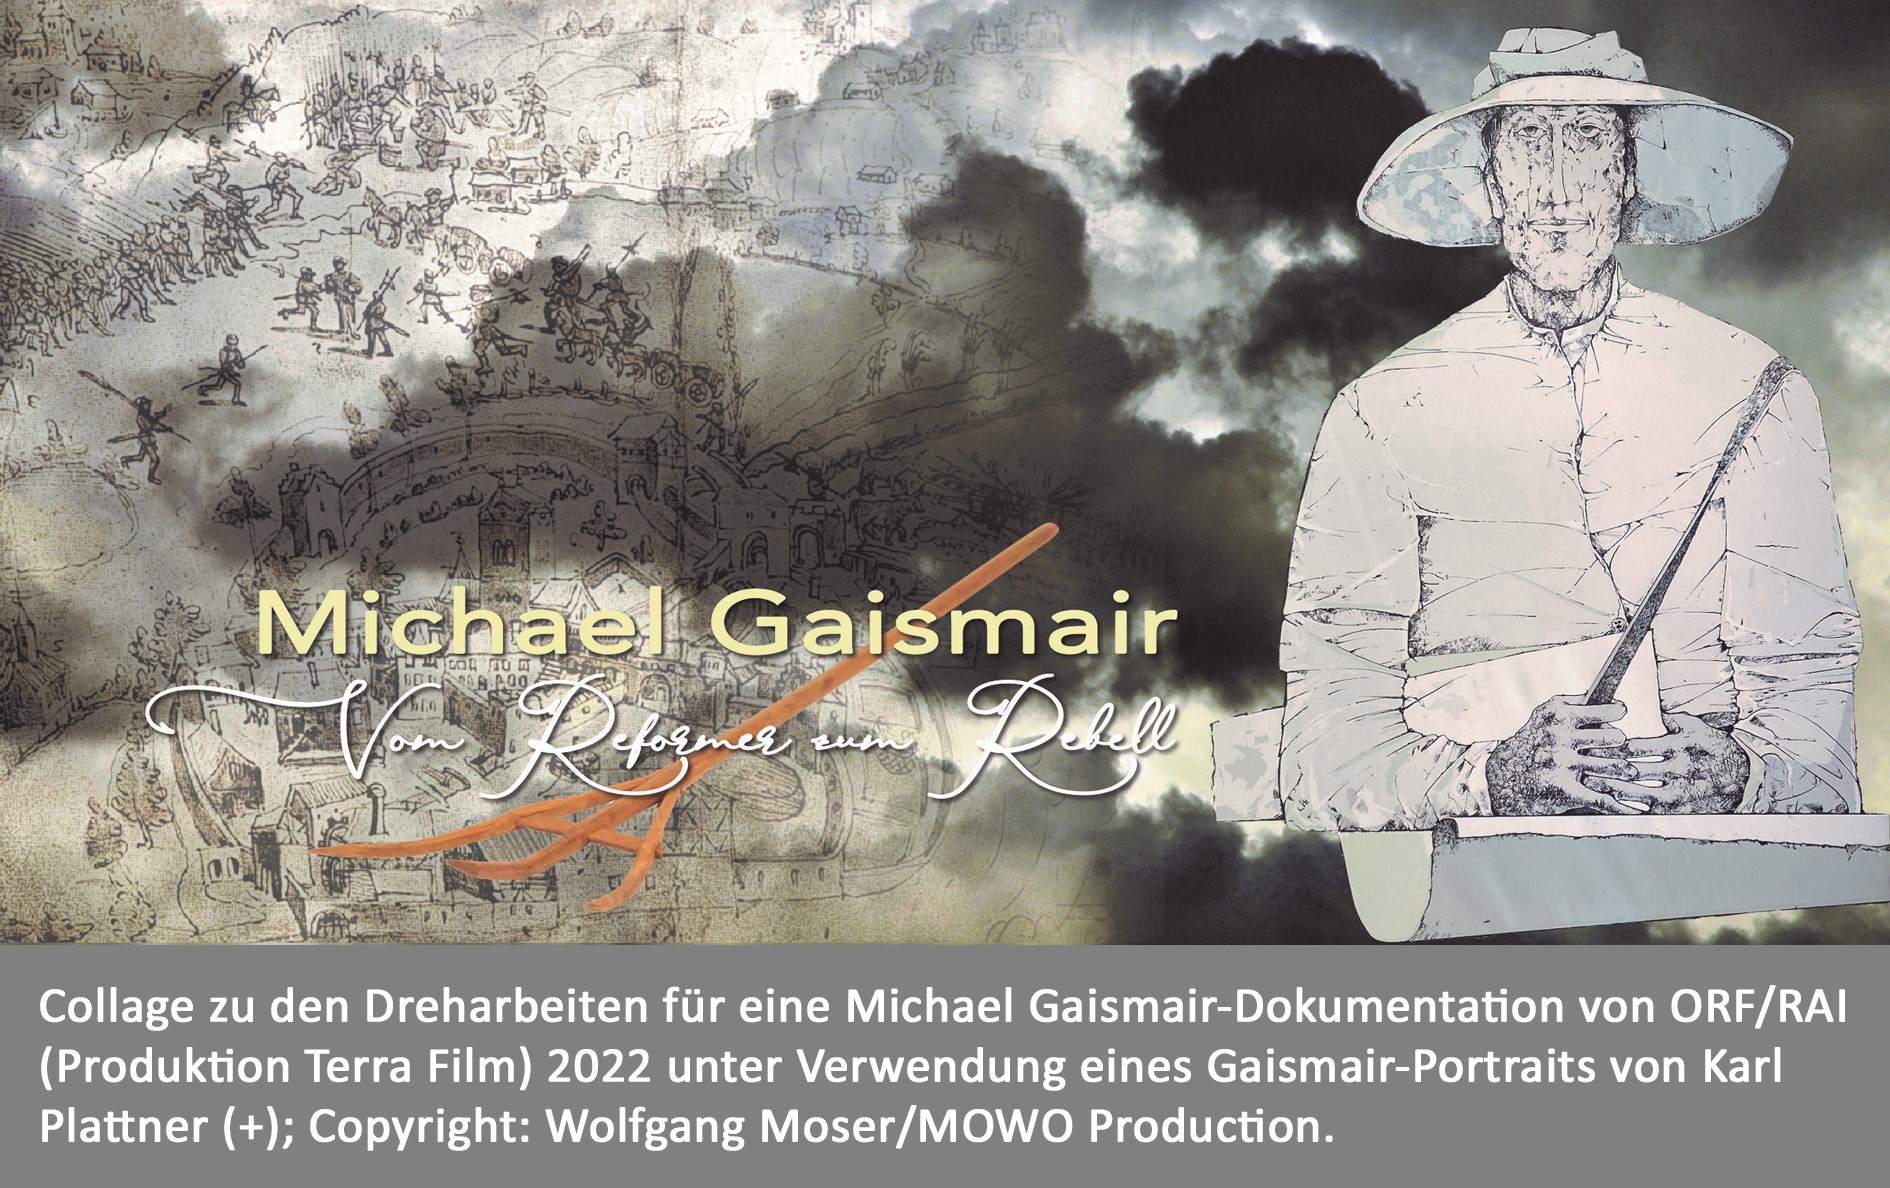 Poster zu den Dreharbeiten für die Filmdokumentation „Michael Gaismair. Vom Reformer zum Rebellen“.